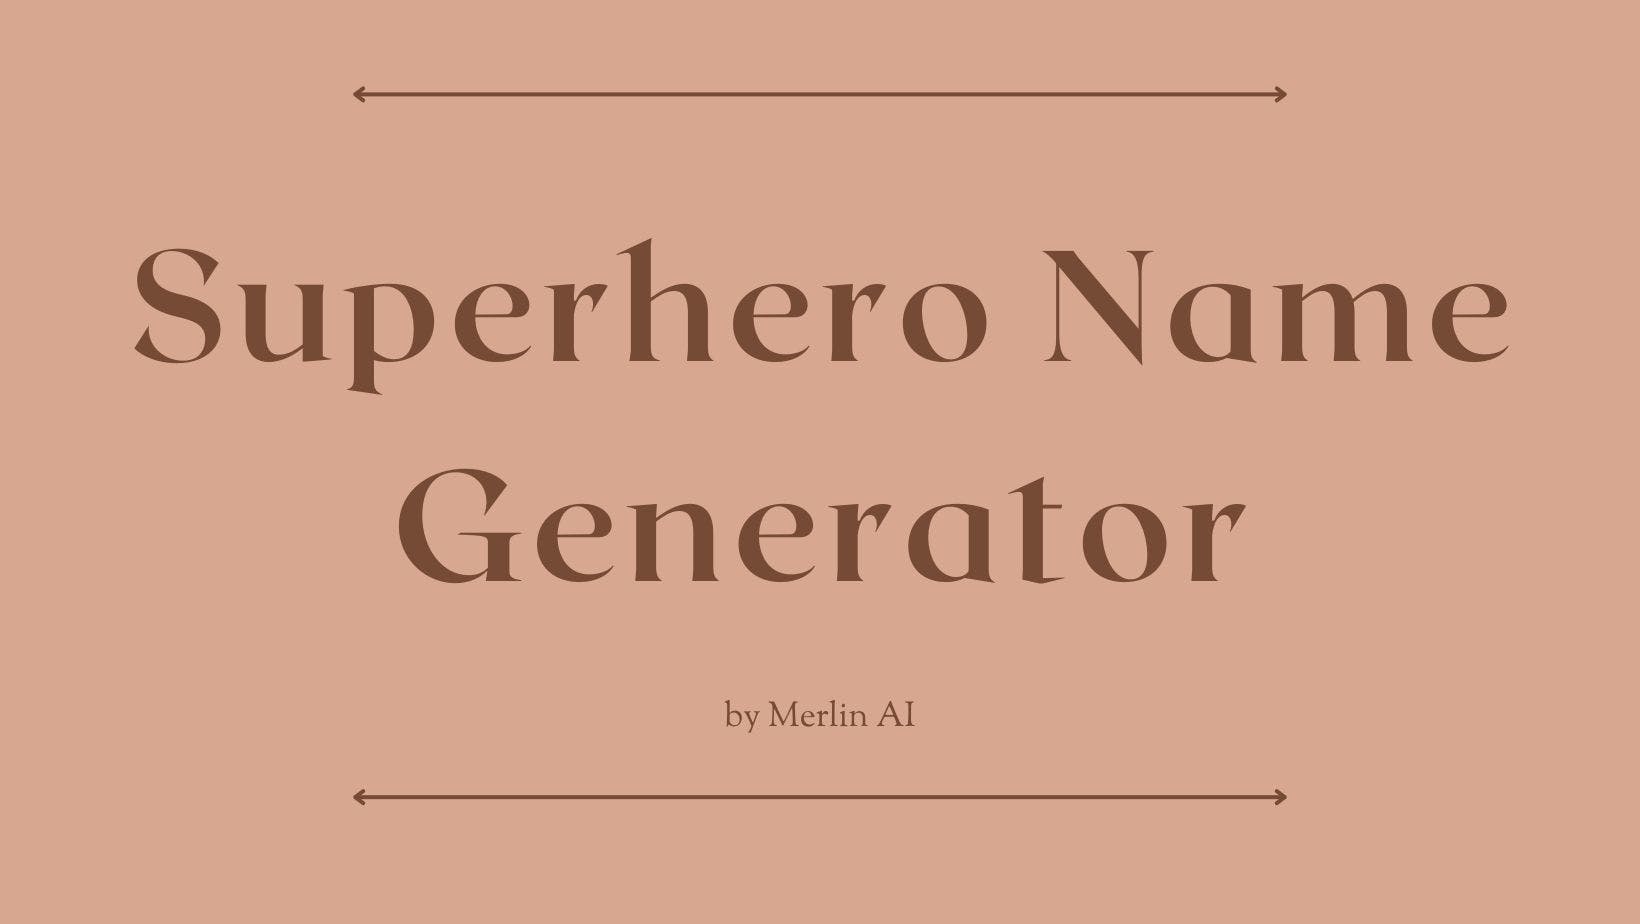 Cover Image for Générateur gratuit de noms de super-héros par Merlin AI